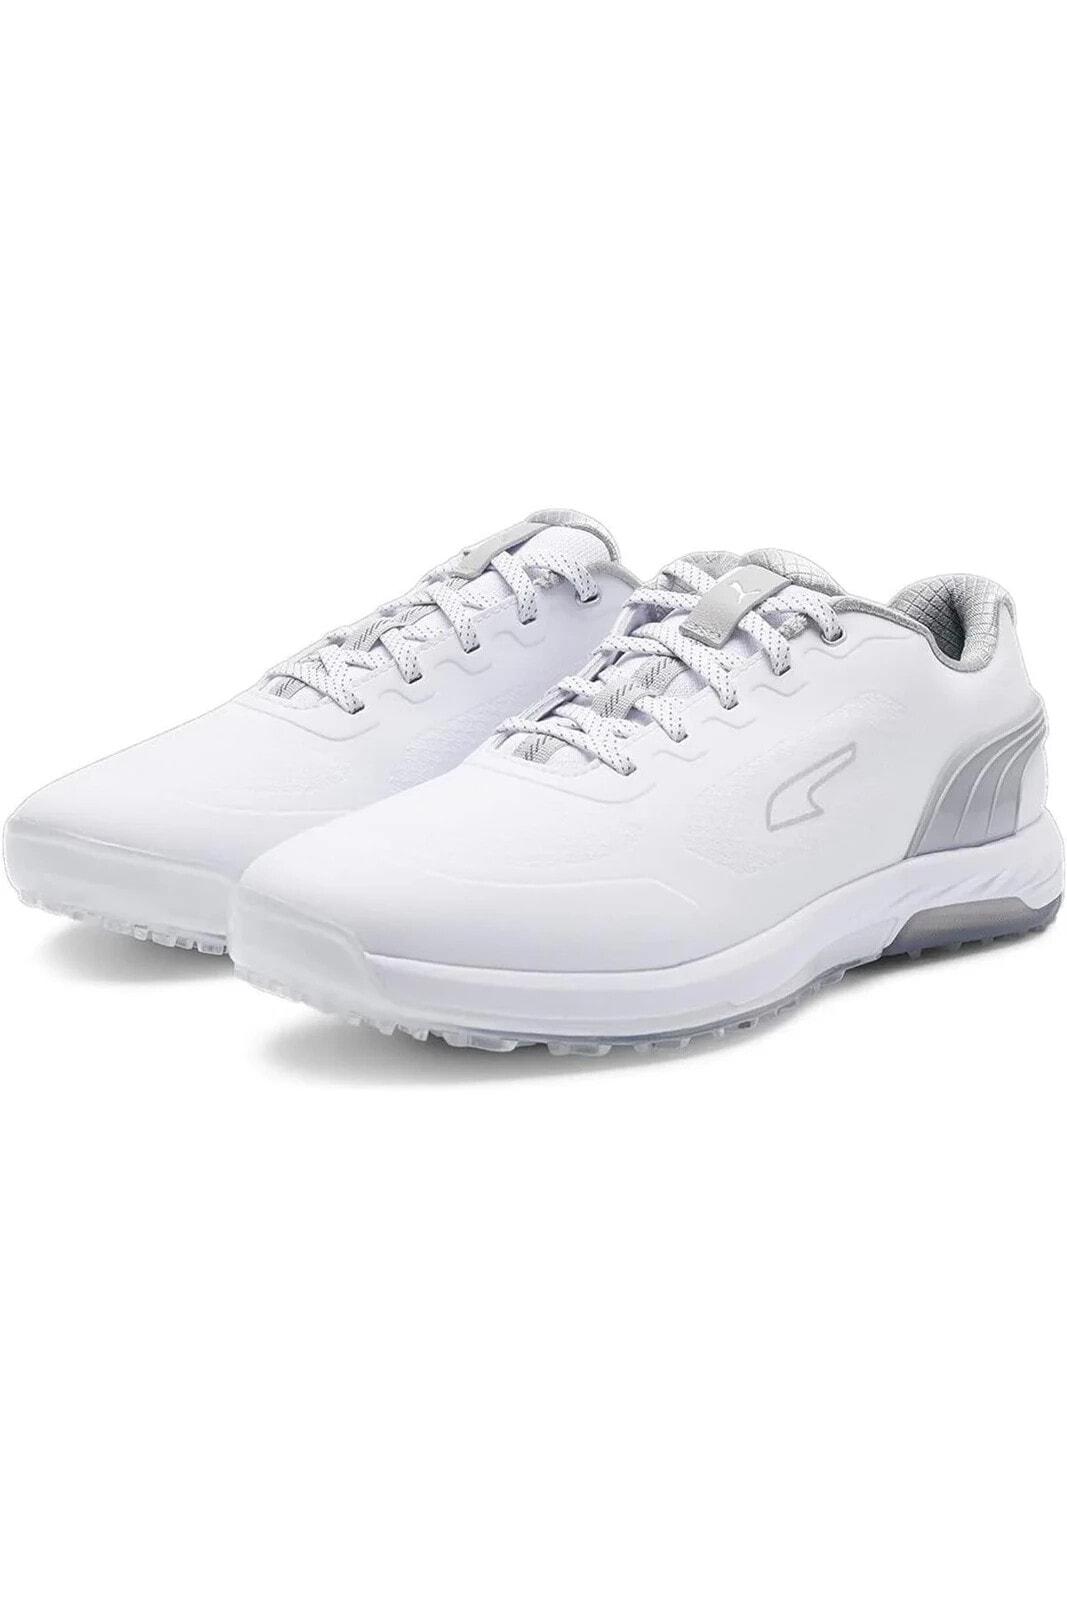 Alphacat Nitro Shoes - Erkek Golf Ayakkabısı